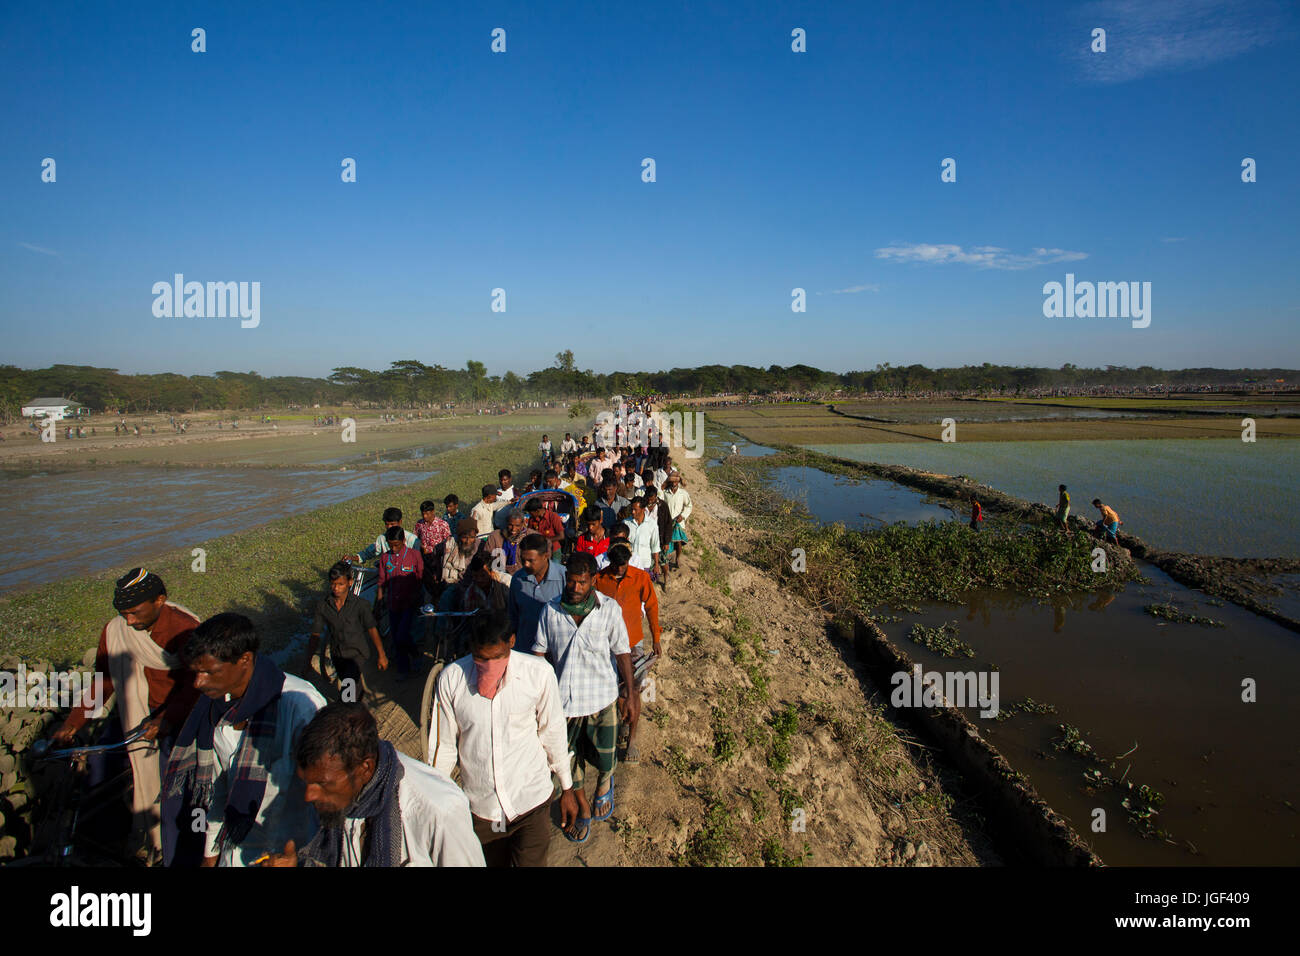 Les personnes qui arrivent à regarder la corrida. Netrokona, au Bangladesh. Banque D'Images